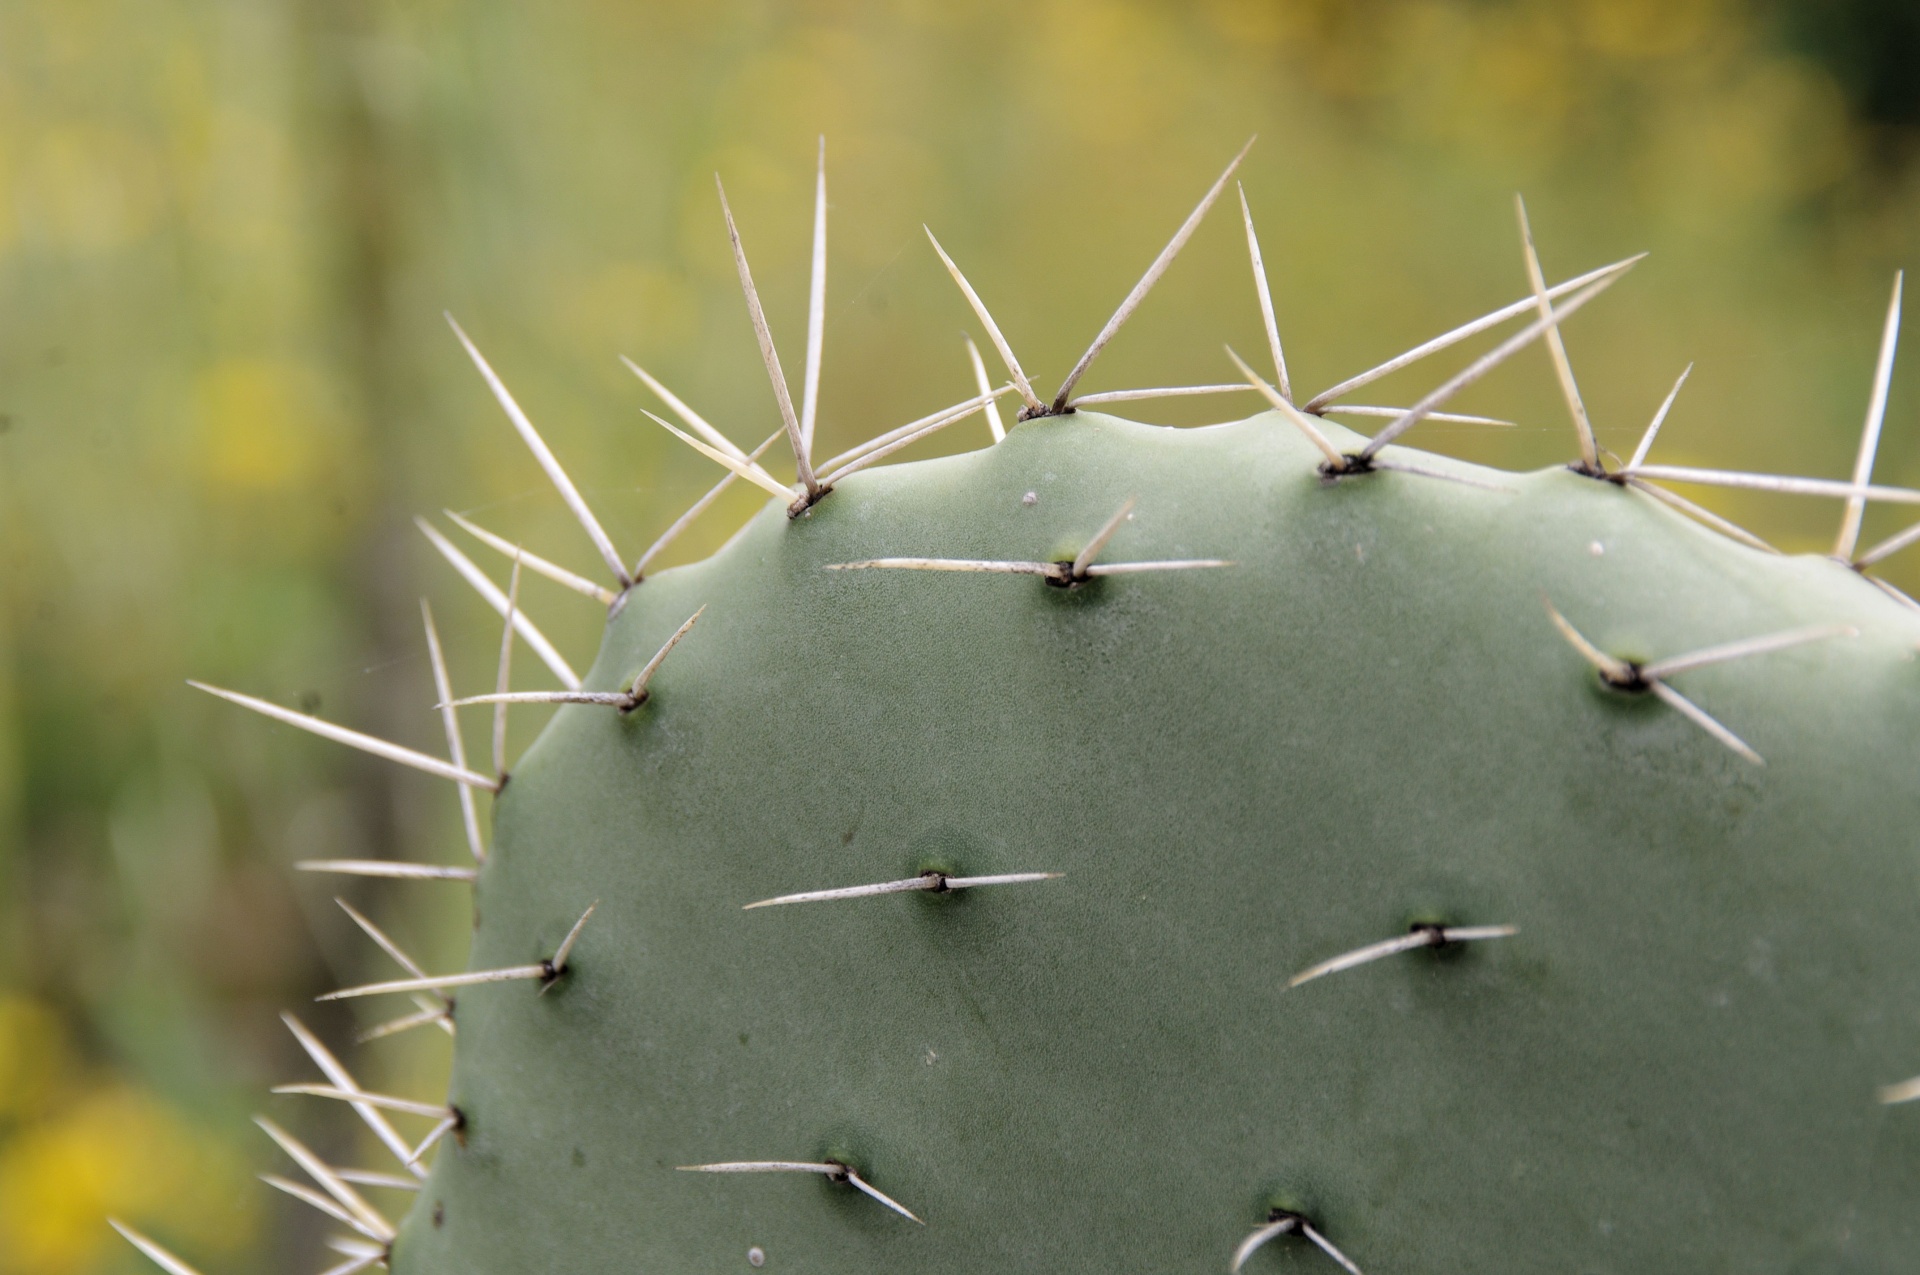 Aproape de spini de cactus